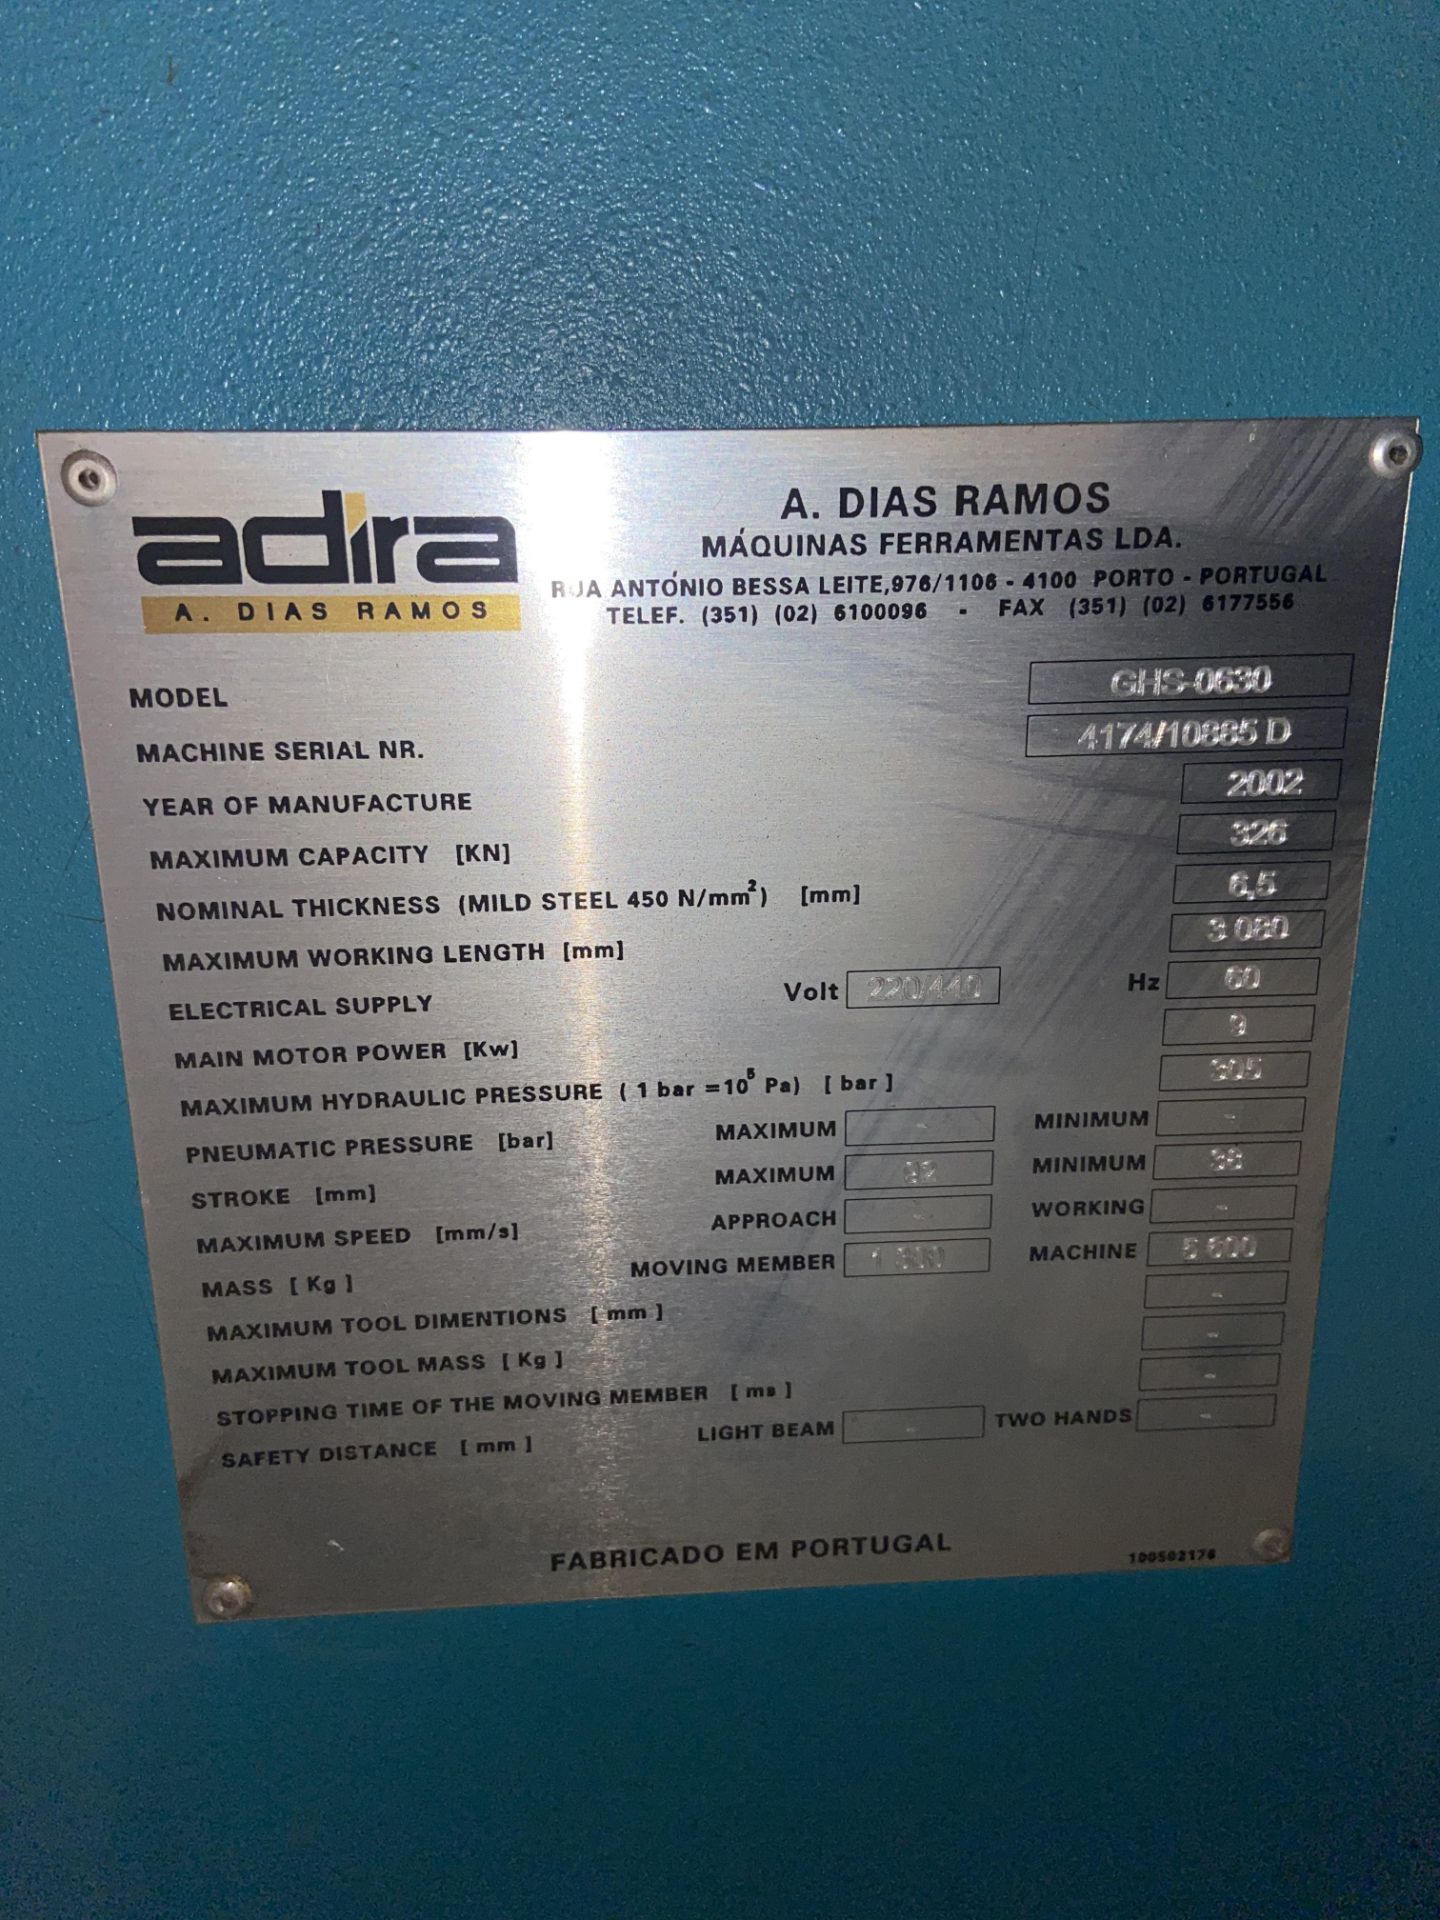 Adira A. Dias Ramos 326 (KN) Capacity Shear, M/N GHS-0630, S/N 4174/10885 D, Year of Manufacturer: - Bild 8 aus 12